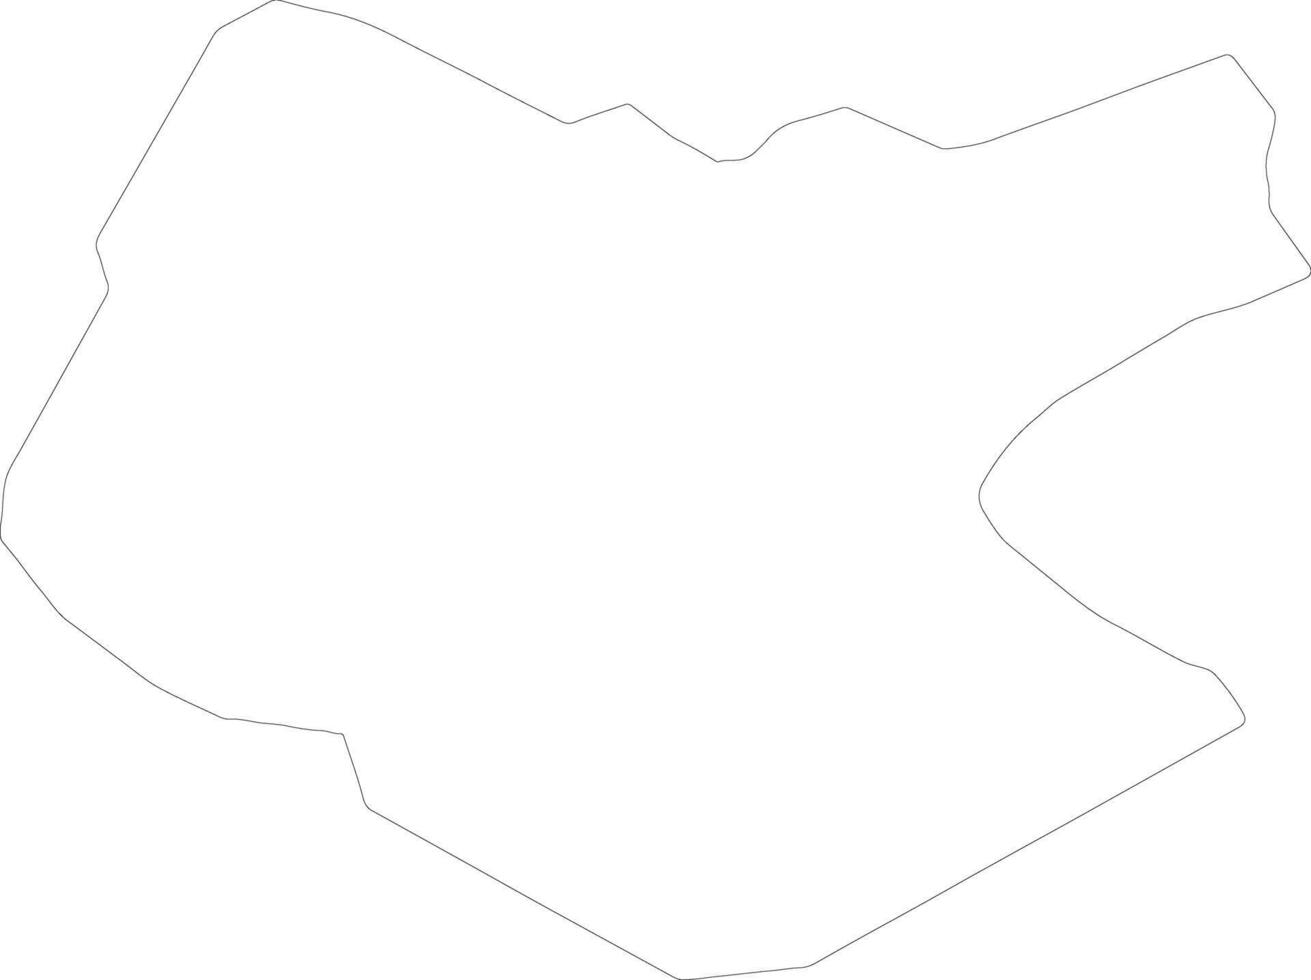 cerknica Eslovenia contorno mapa vector